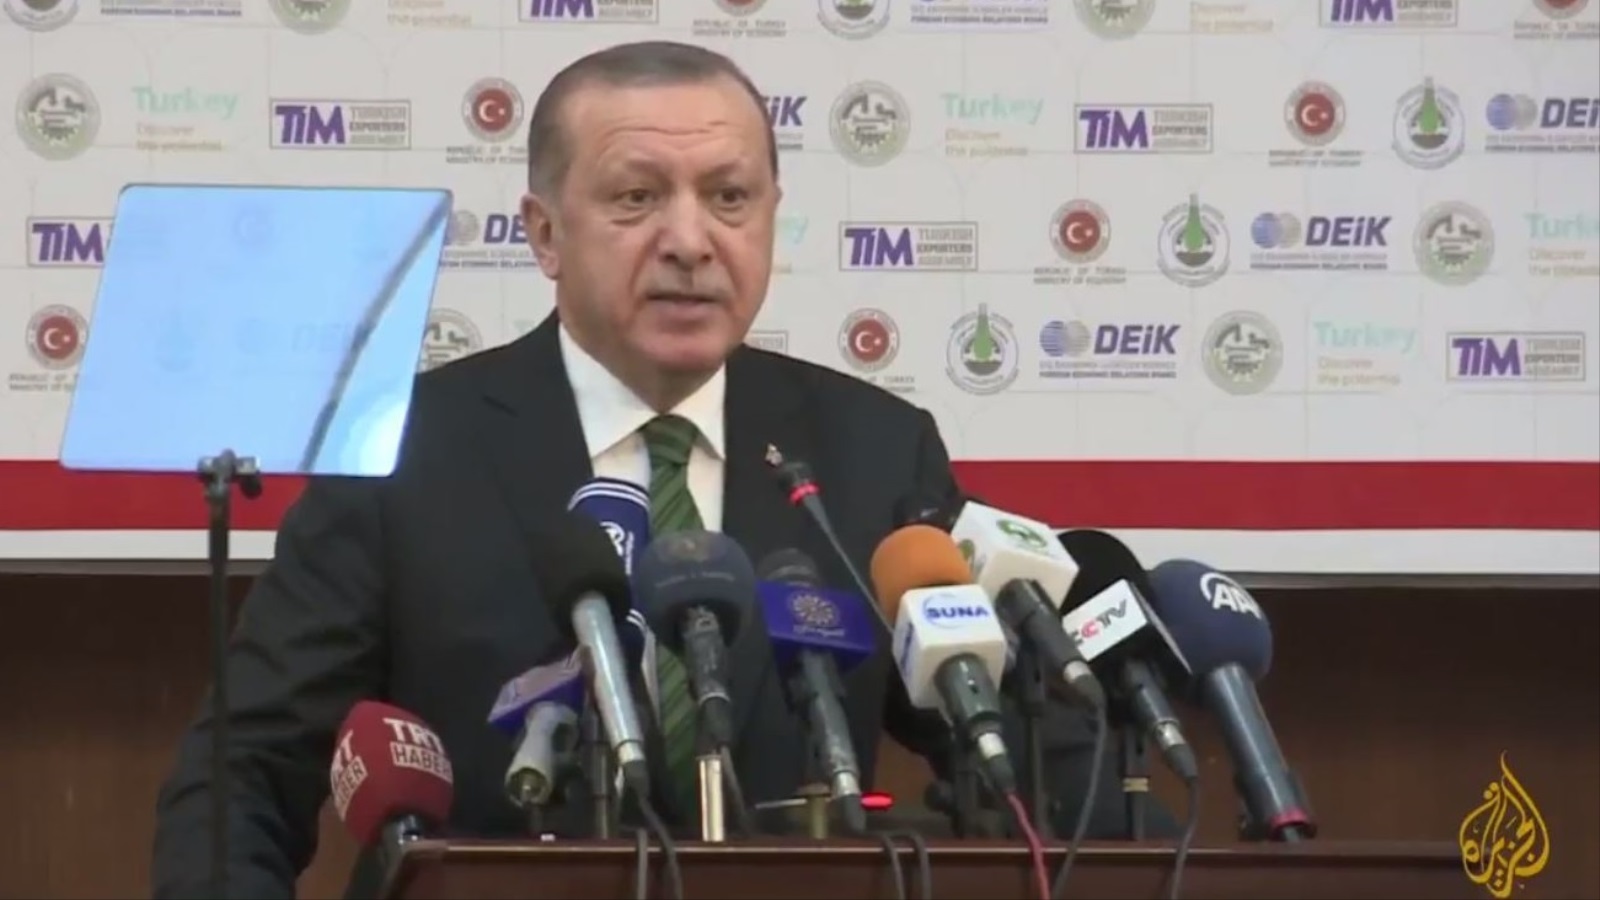 ‪أردوغان يتحدث أمام المنتدى الاقتصادي السوداني التركي بالخرطوم‬ أردوغان يتحدث أمام المنتدى الاقتصادي السوداني التركي بالخرطوم (الجزيرة)